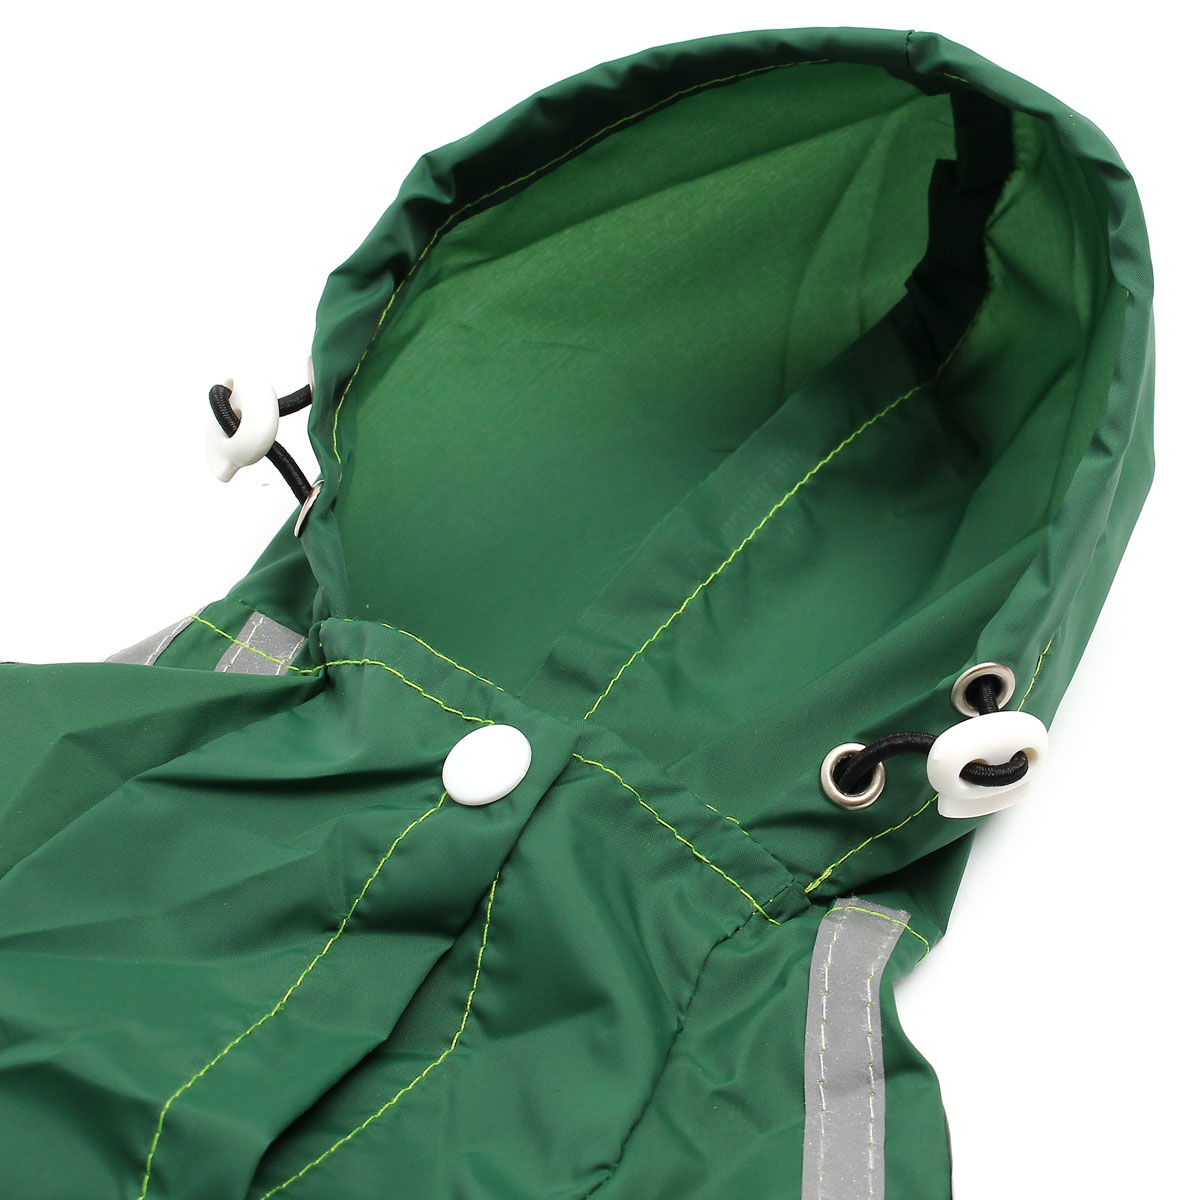 Dog-Pet-Outdoor-Winter-Waterproof-Rain-Coat-Jacket-Fleece-Reflective-Safe-1967559-5